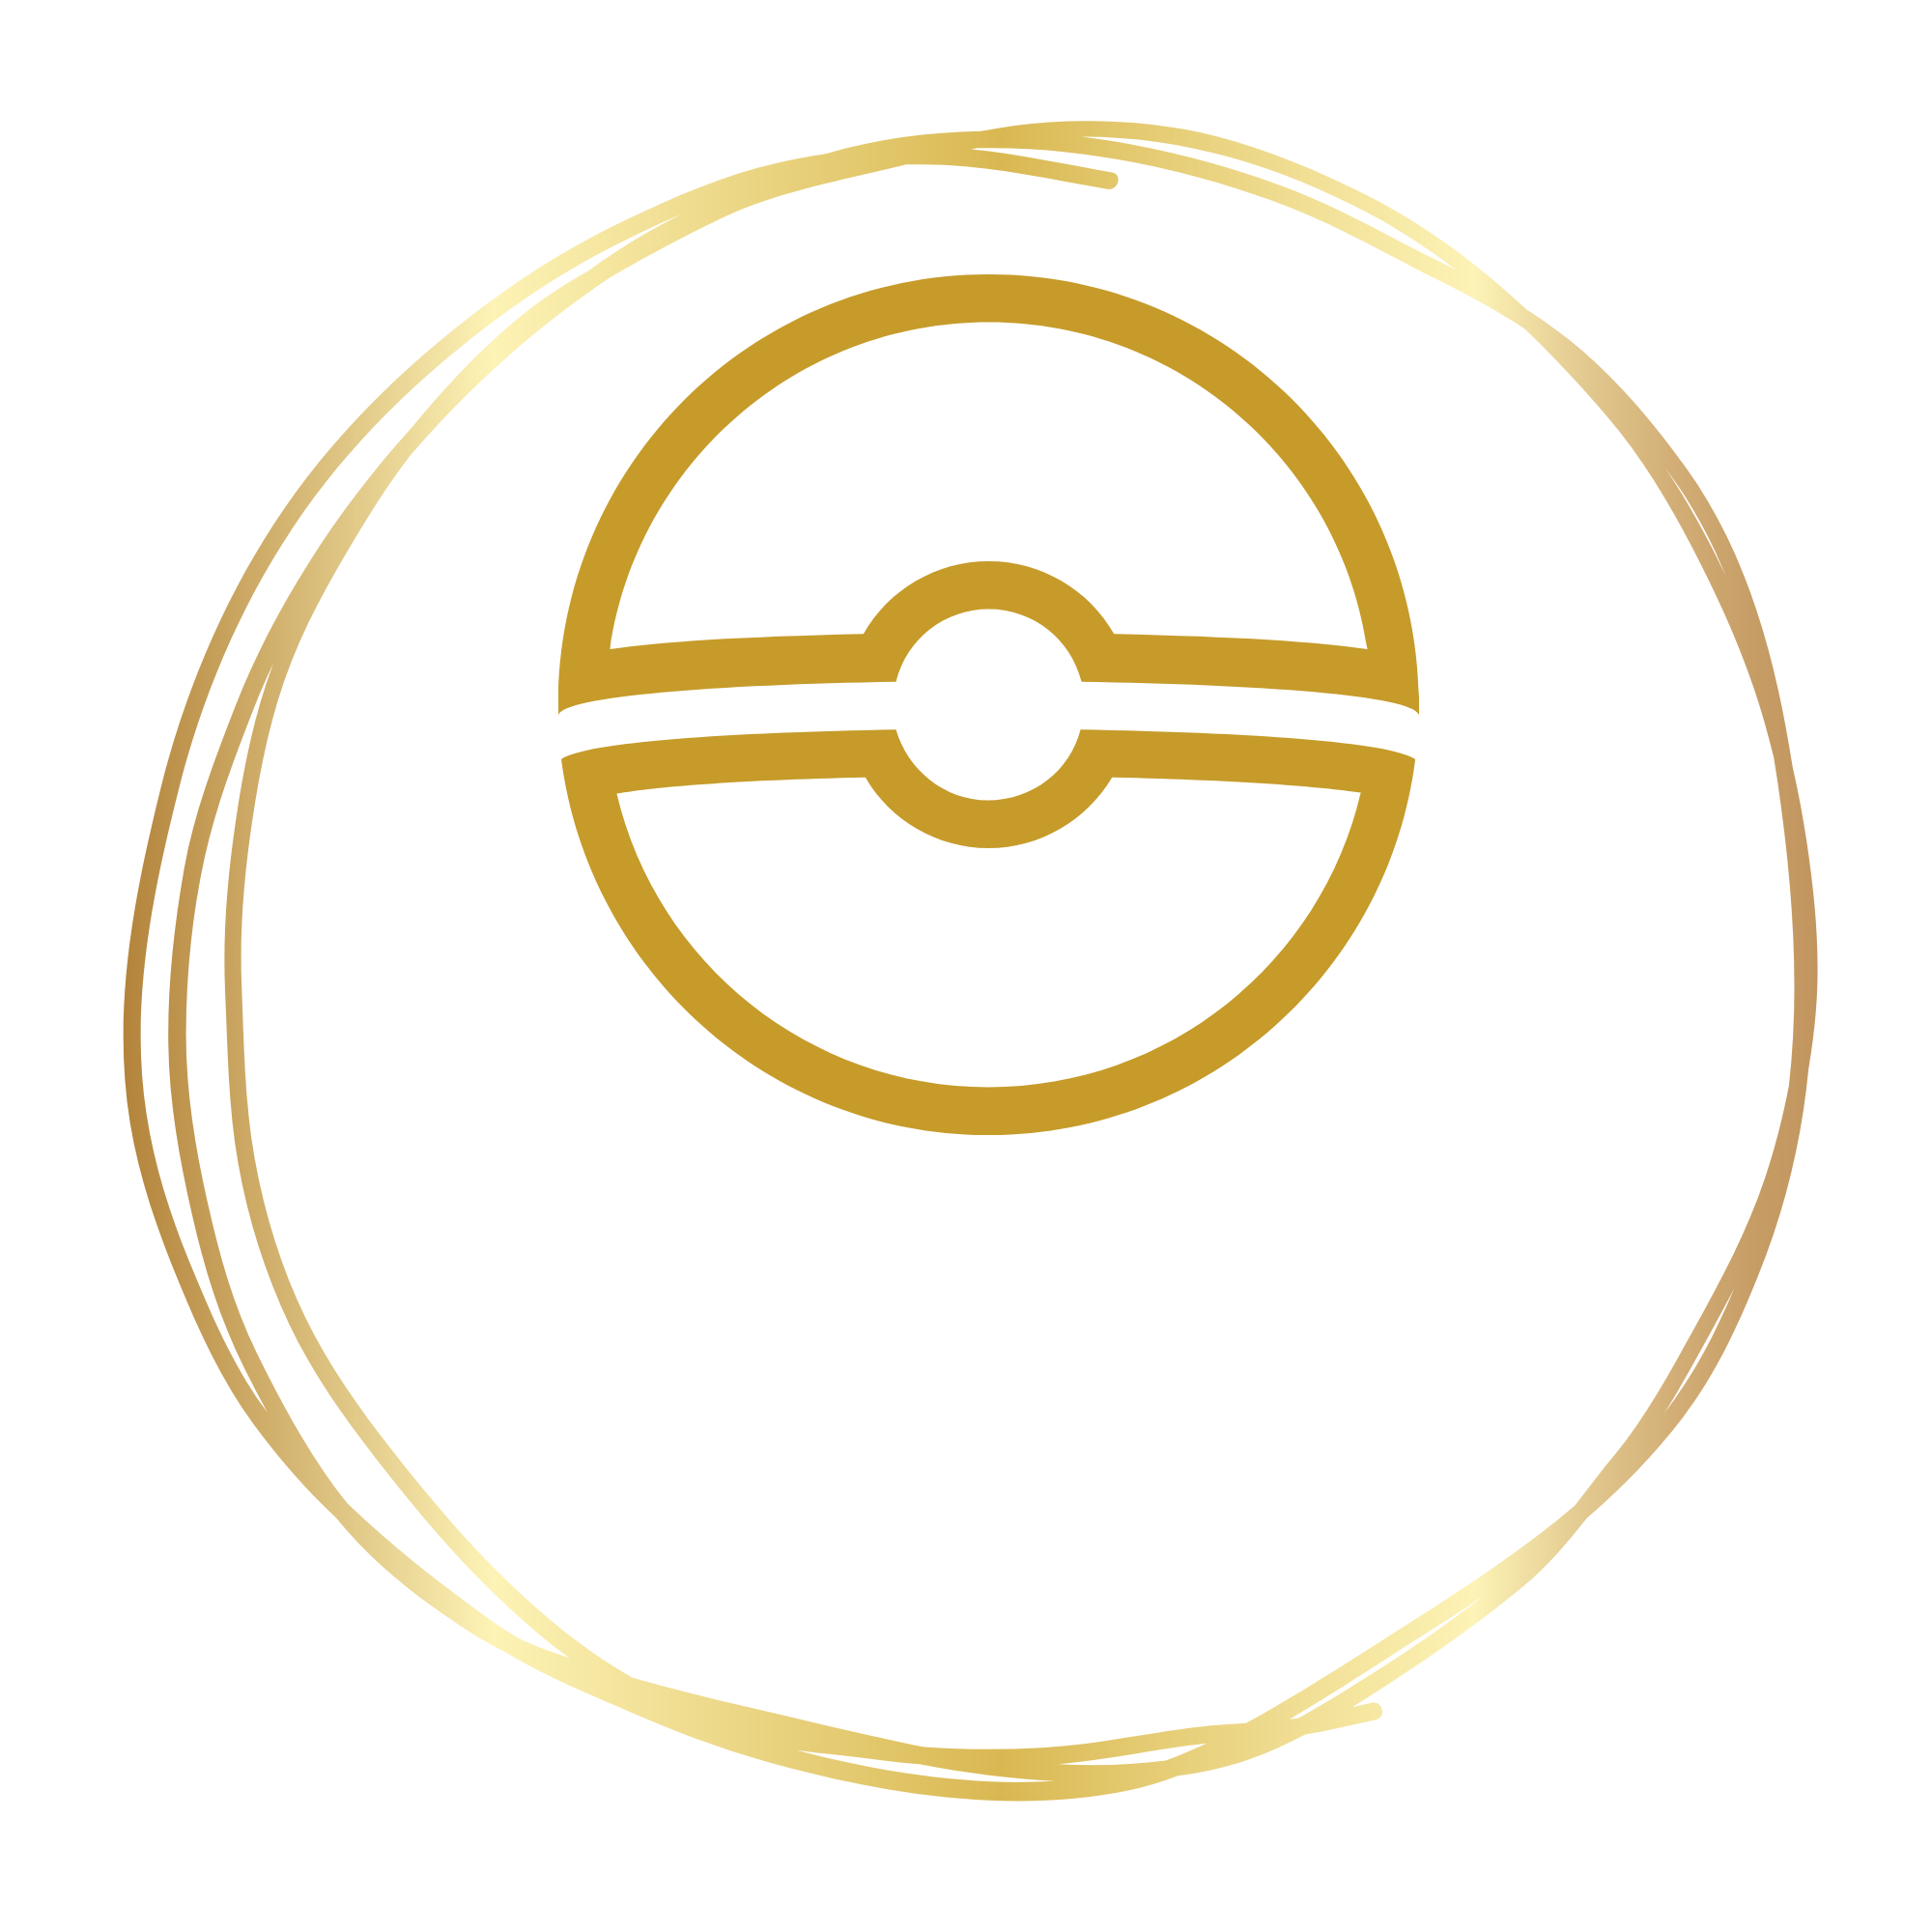 Poke Case